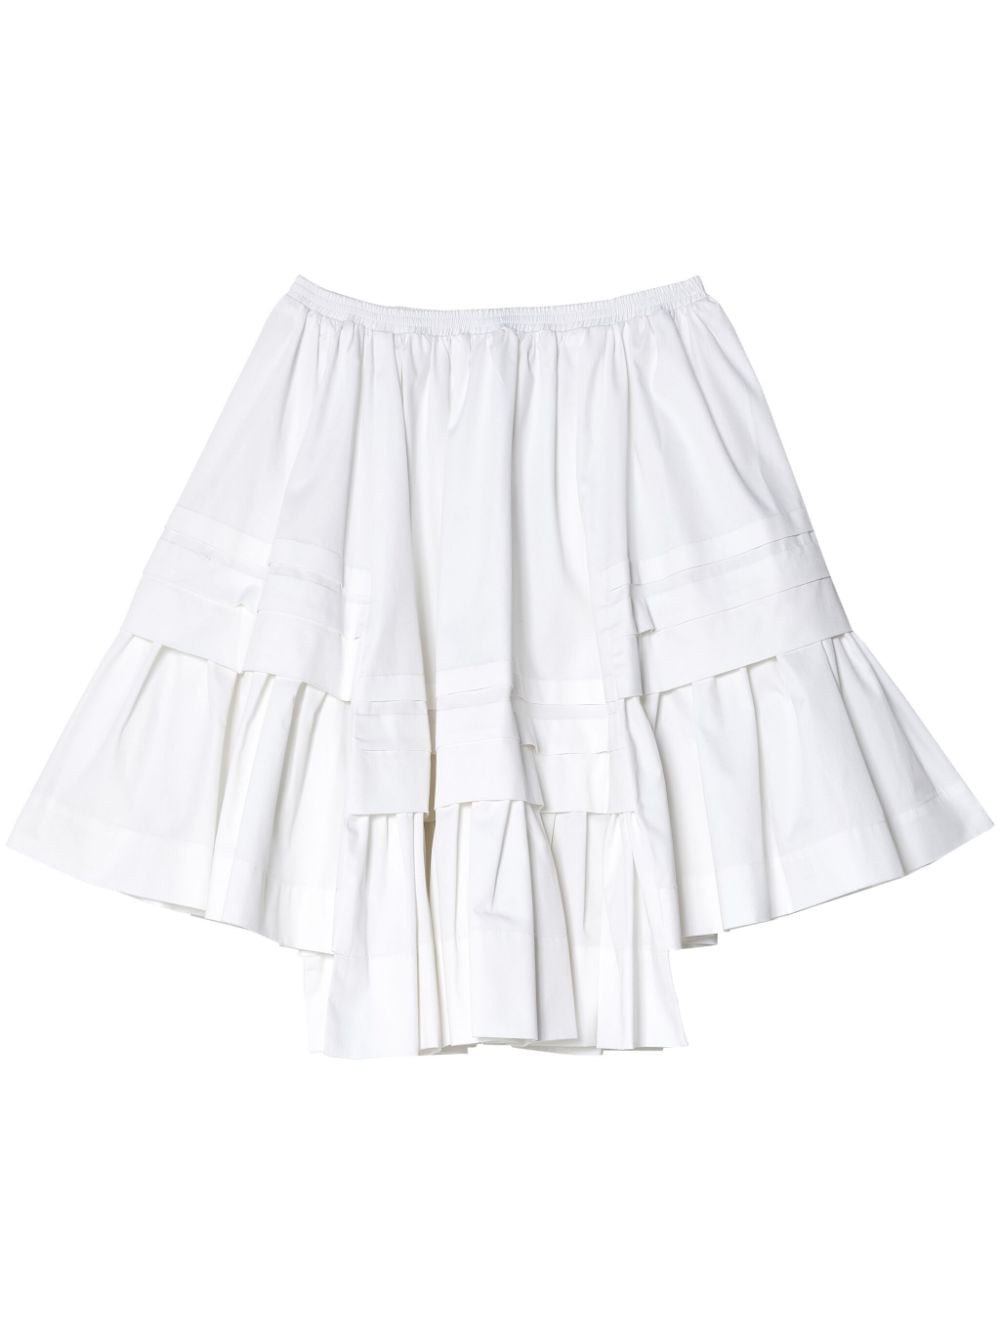 Molly Goddard Rosemary cotton-poplin skirt - White von Molly Goddard